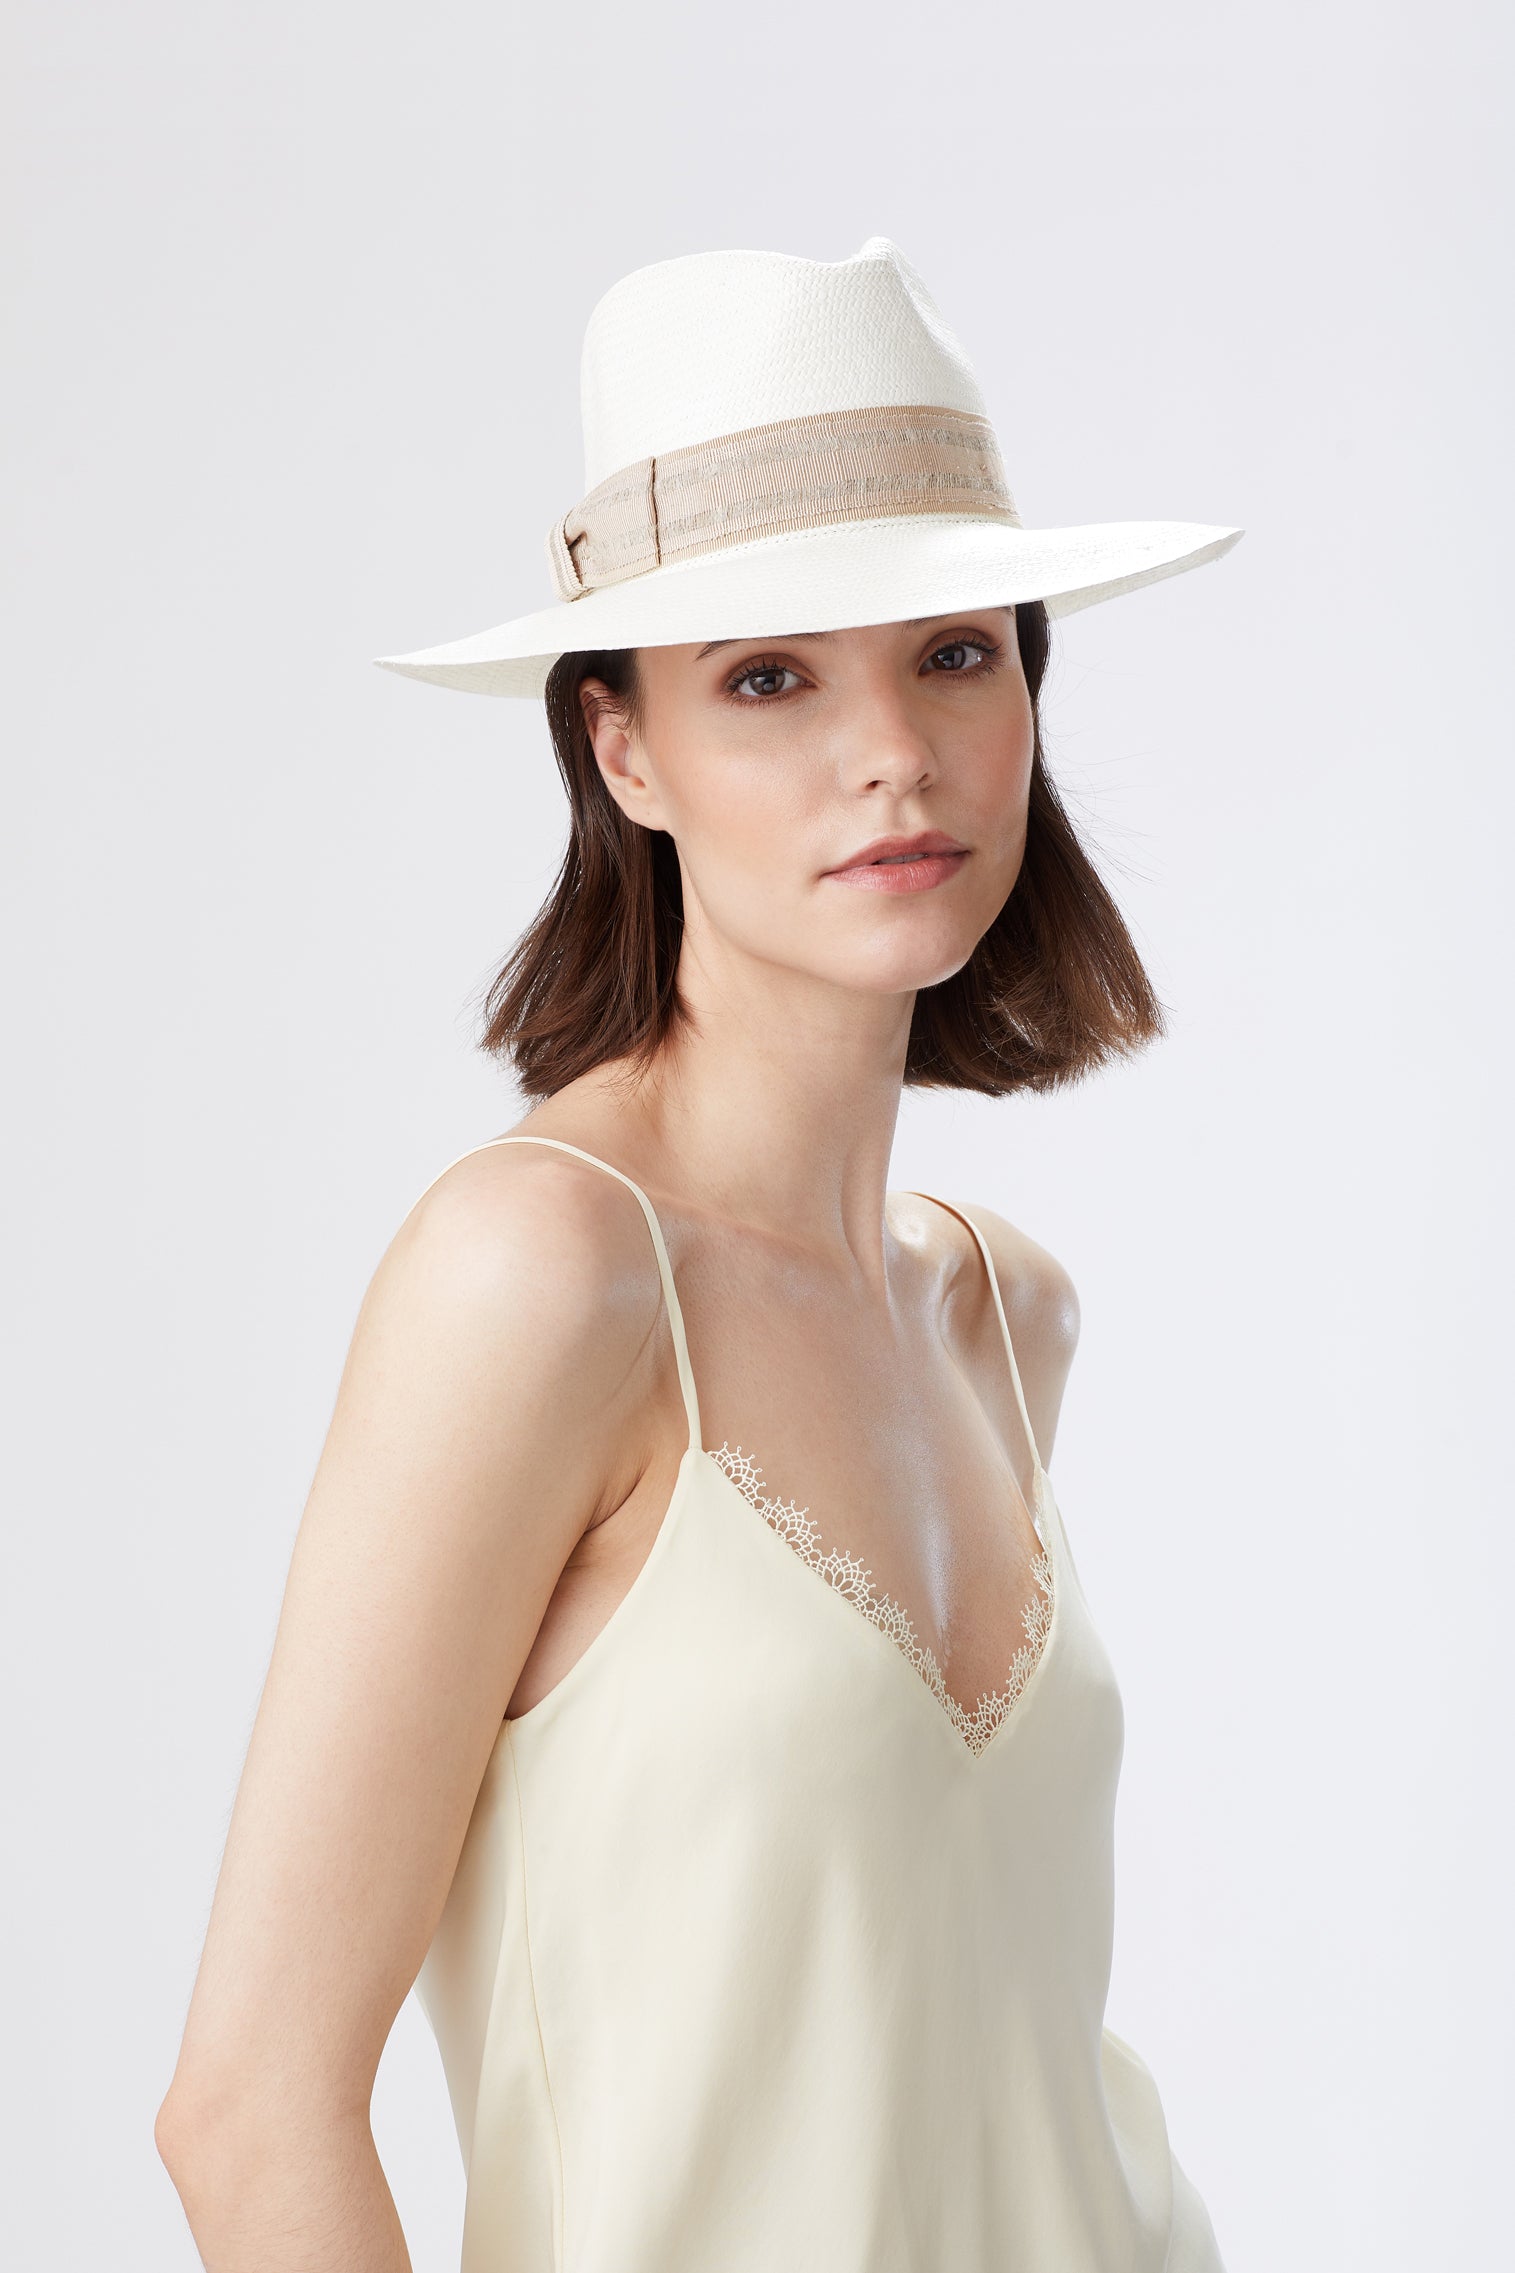 Berwick Panama Hat - All Ready to Wear - Lock & Co. Hatters London UK